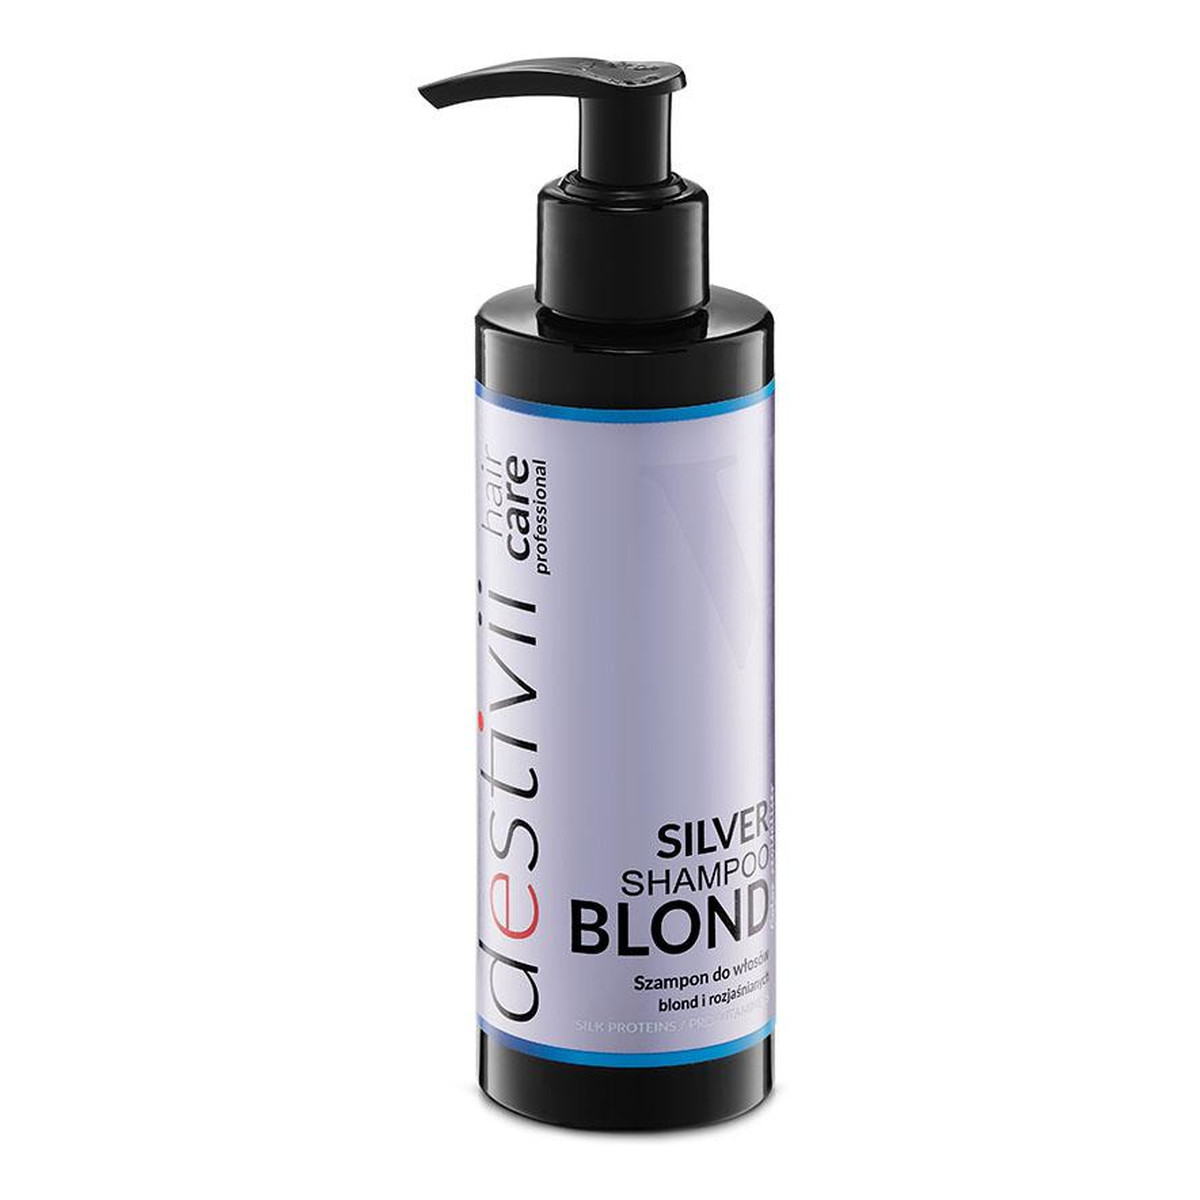 Destivii Silver shampoo blond szampon do włosów blond i rozjaśnianych 200ml